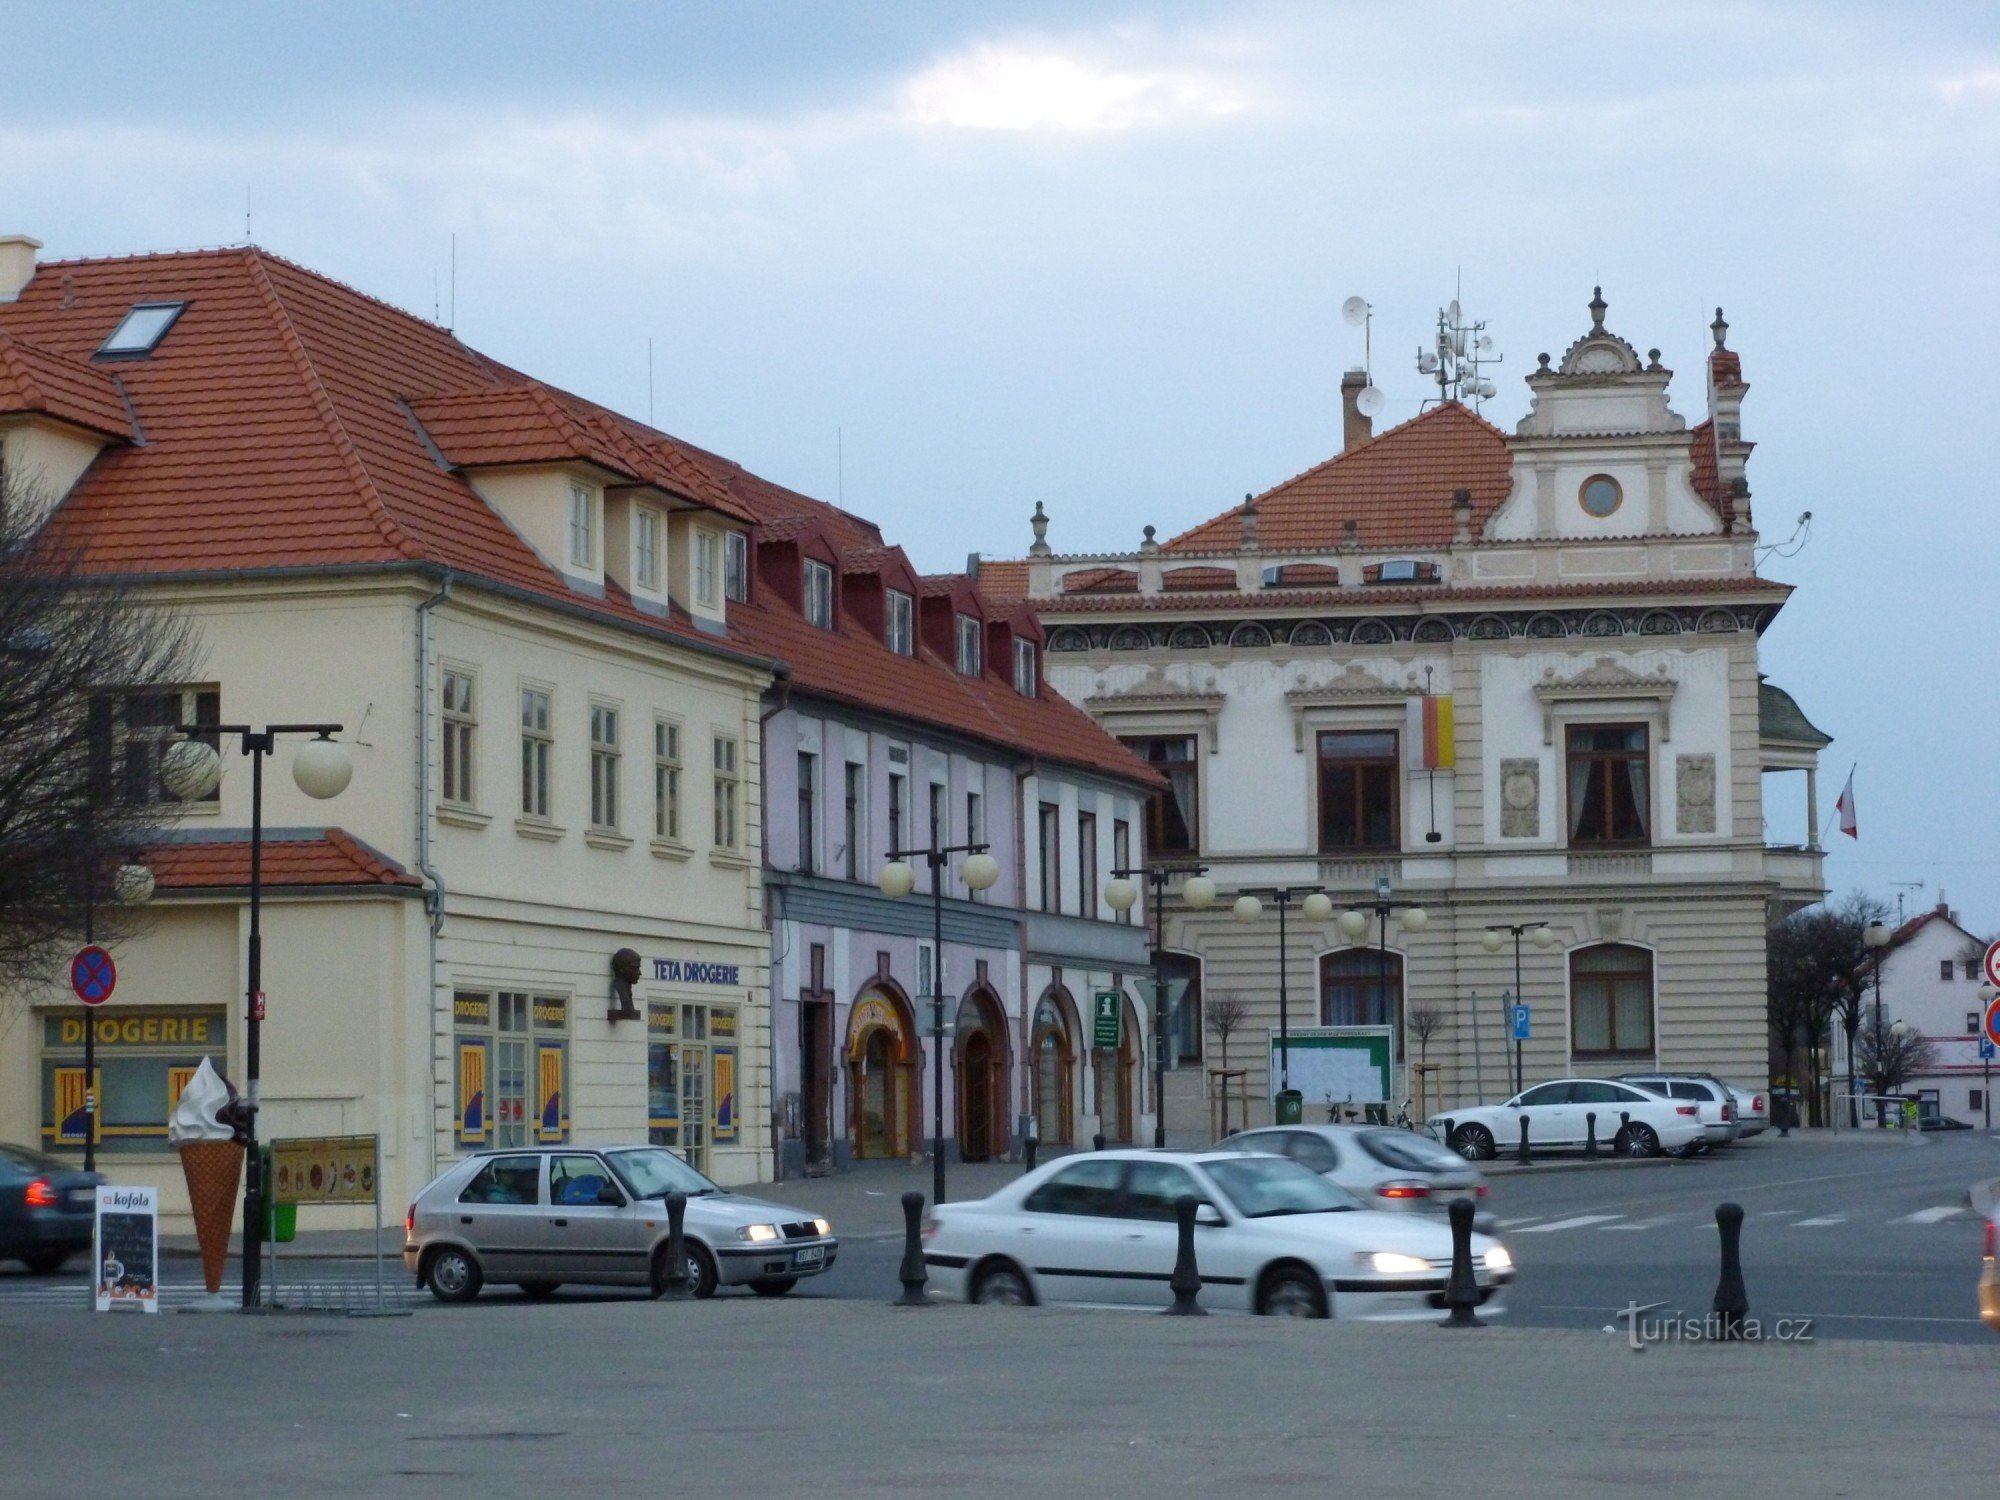 Podebrady - Jiřího náměstí med informationscenter